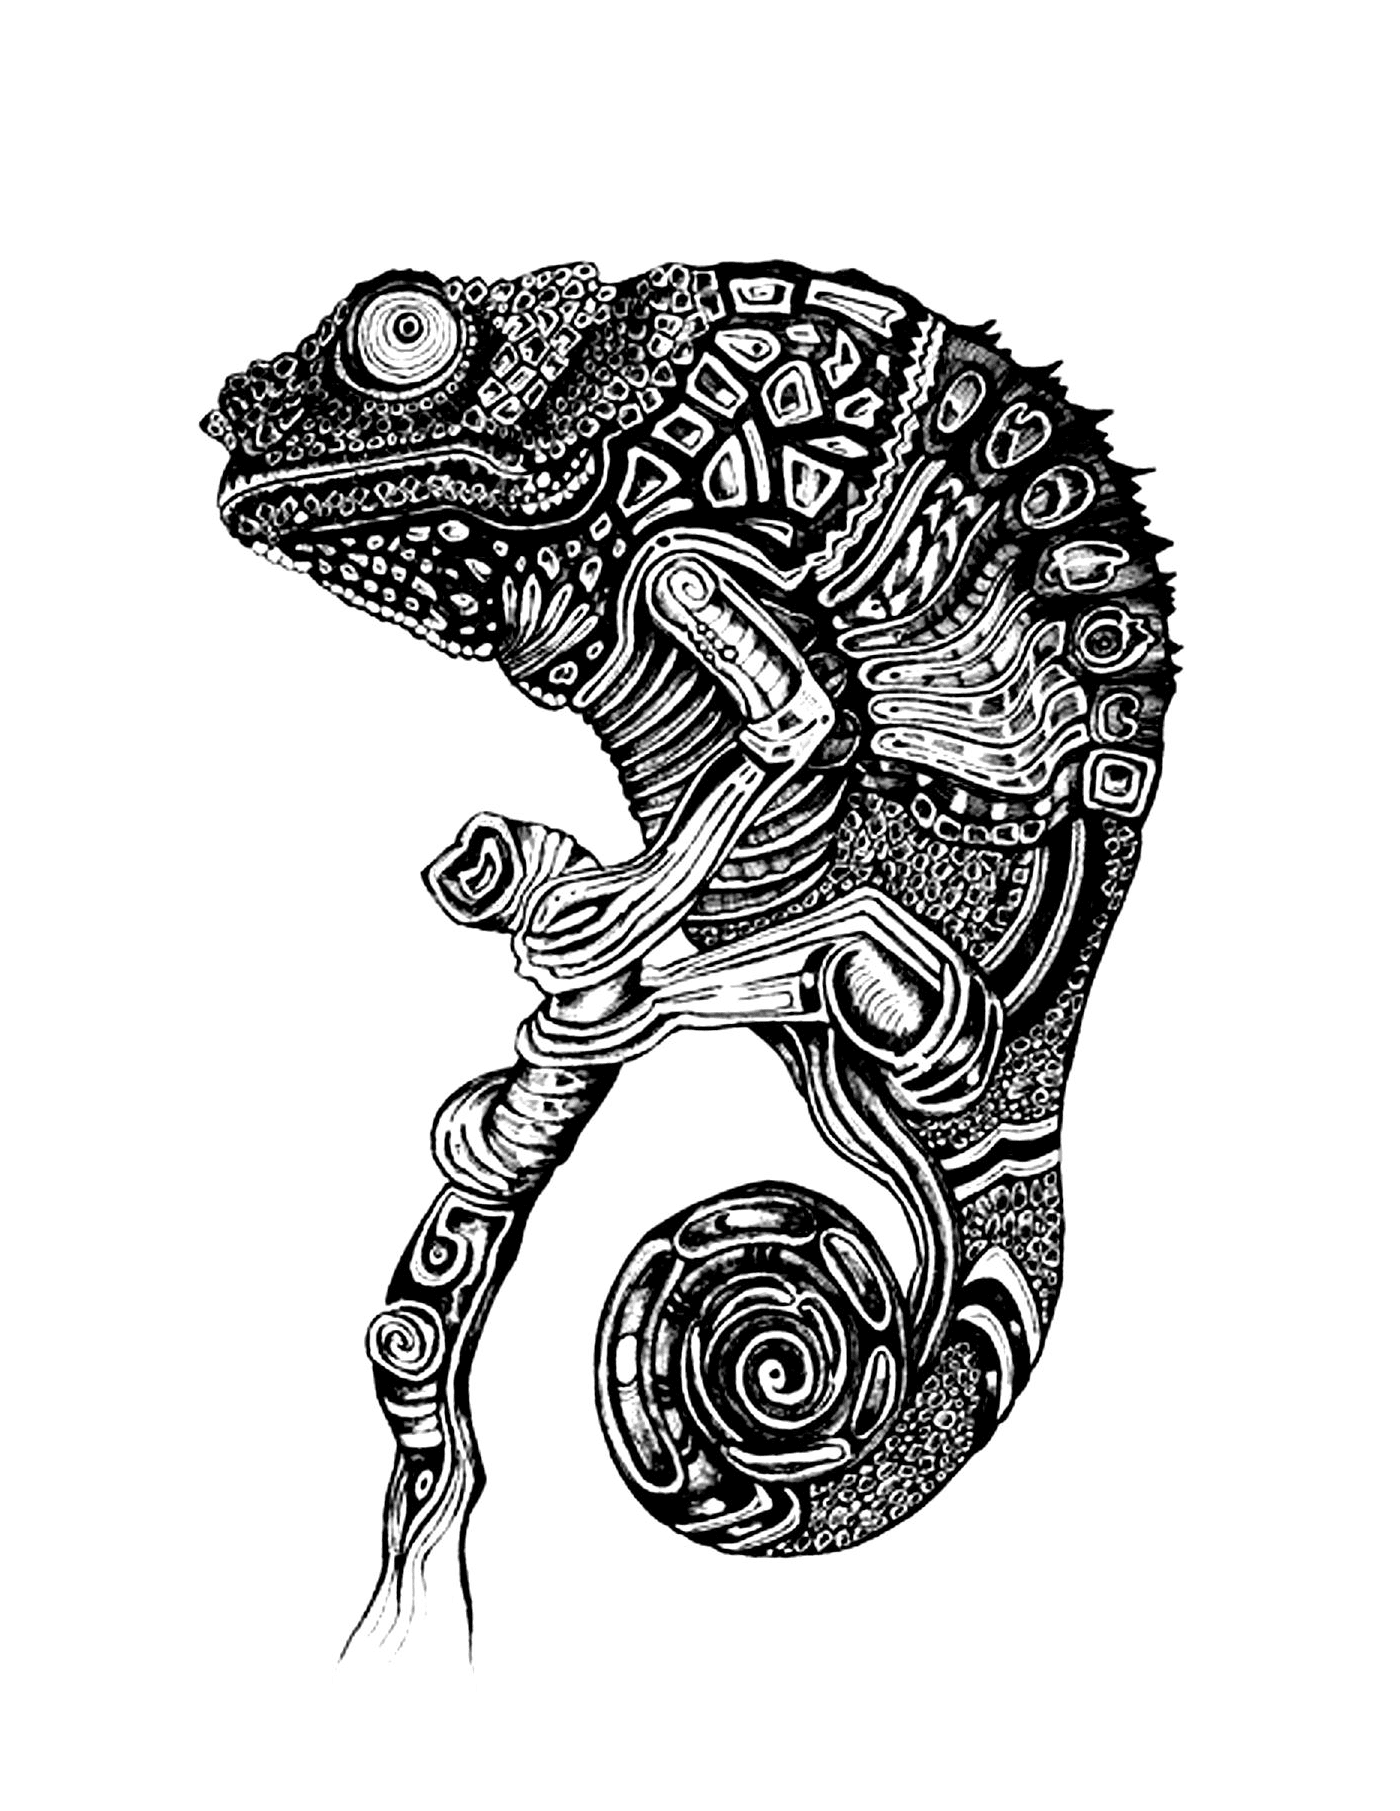  A chameleon 